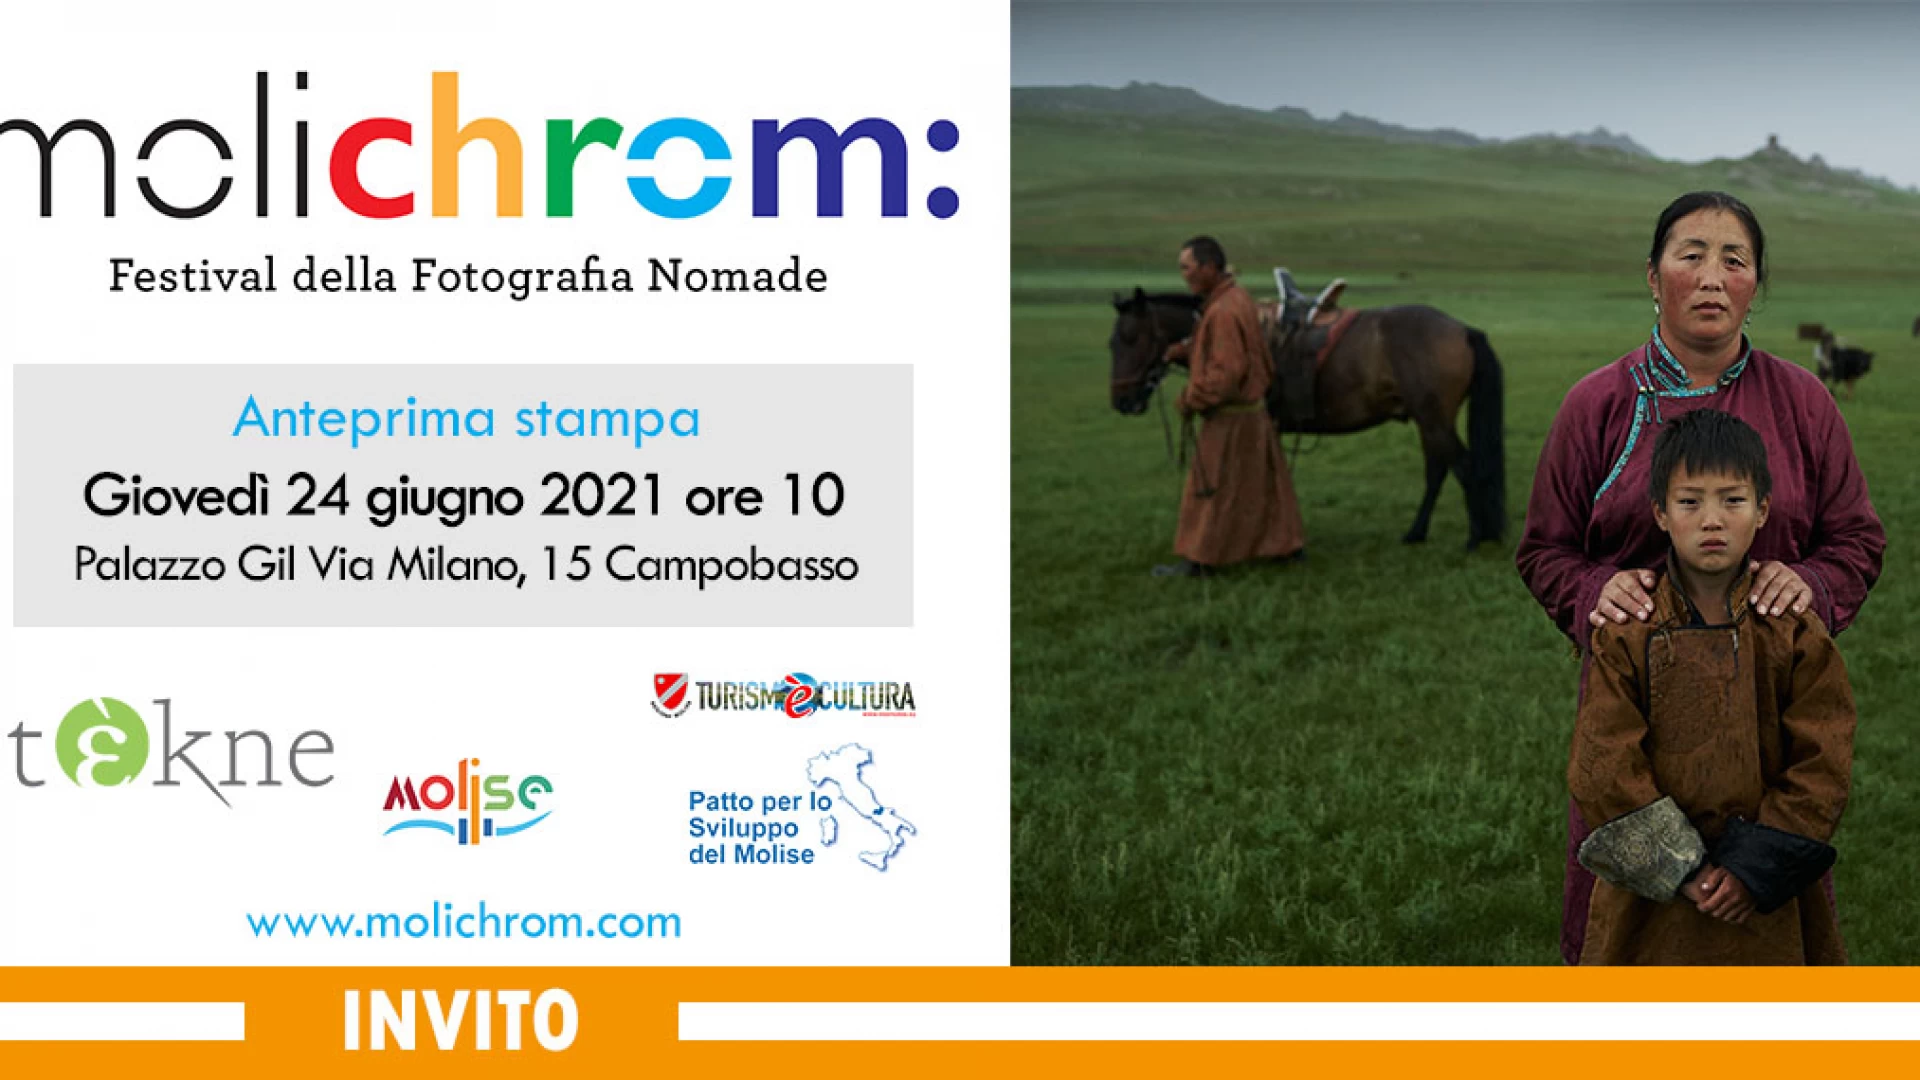 Molichrom, festival della fotografia nomade. Giovedì 24 giugno la presentazione dell’evento.